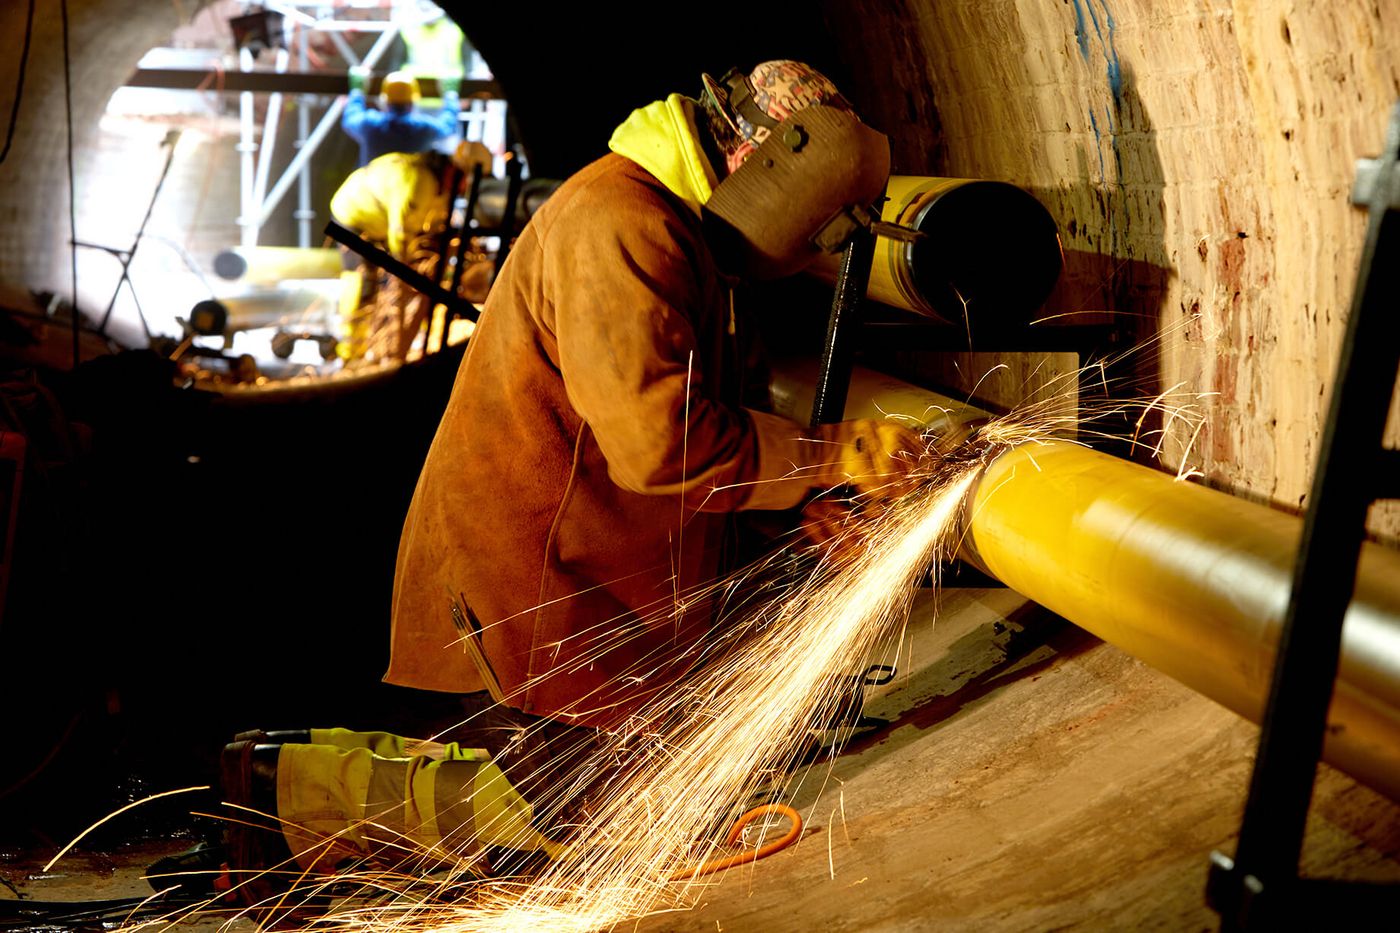 Foto: Bauarbeiter in Schutzausrüstung beim Schweißen einer Rohrleitung, rechts gewölbte Ziegelwand, unscharf im Hintergrund zwei weitere Arbeiter an einem Gerüst im Tageslicht